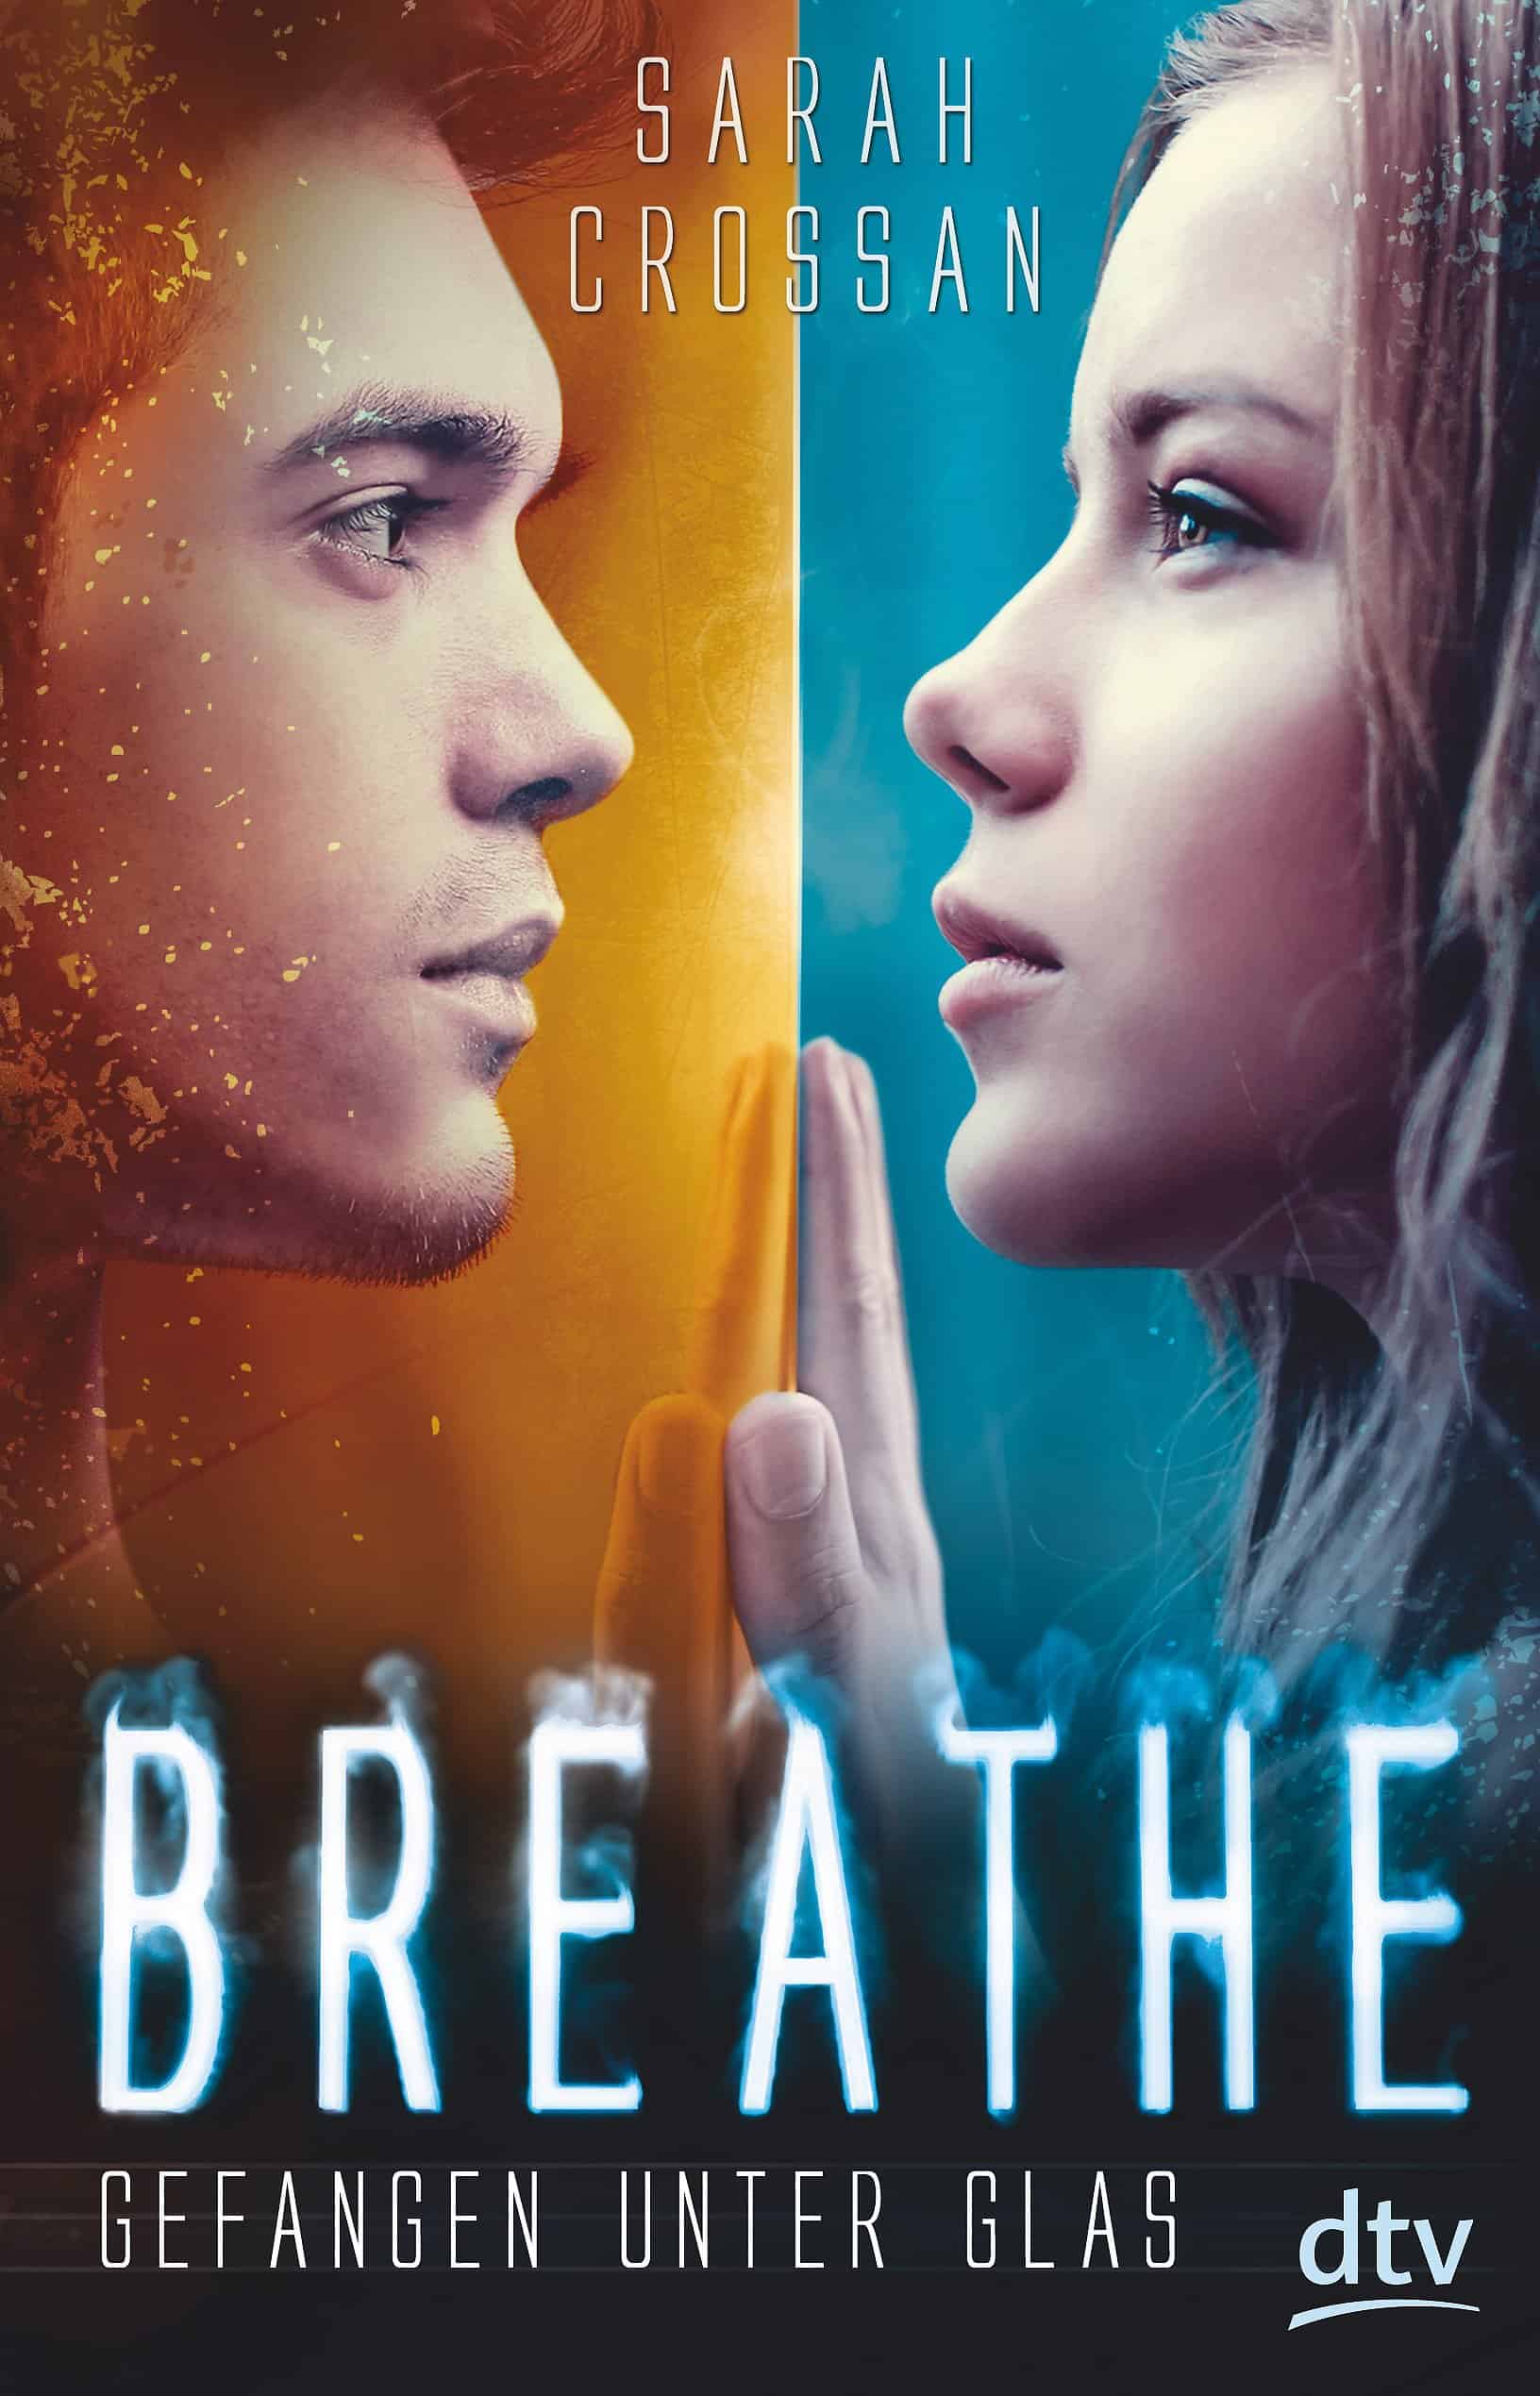 Crossan, Sarah: Breathe. Gefangen unter Glas